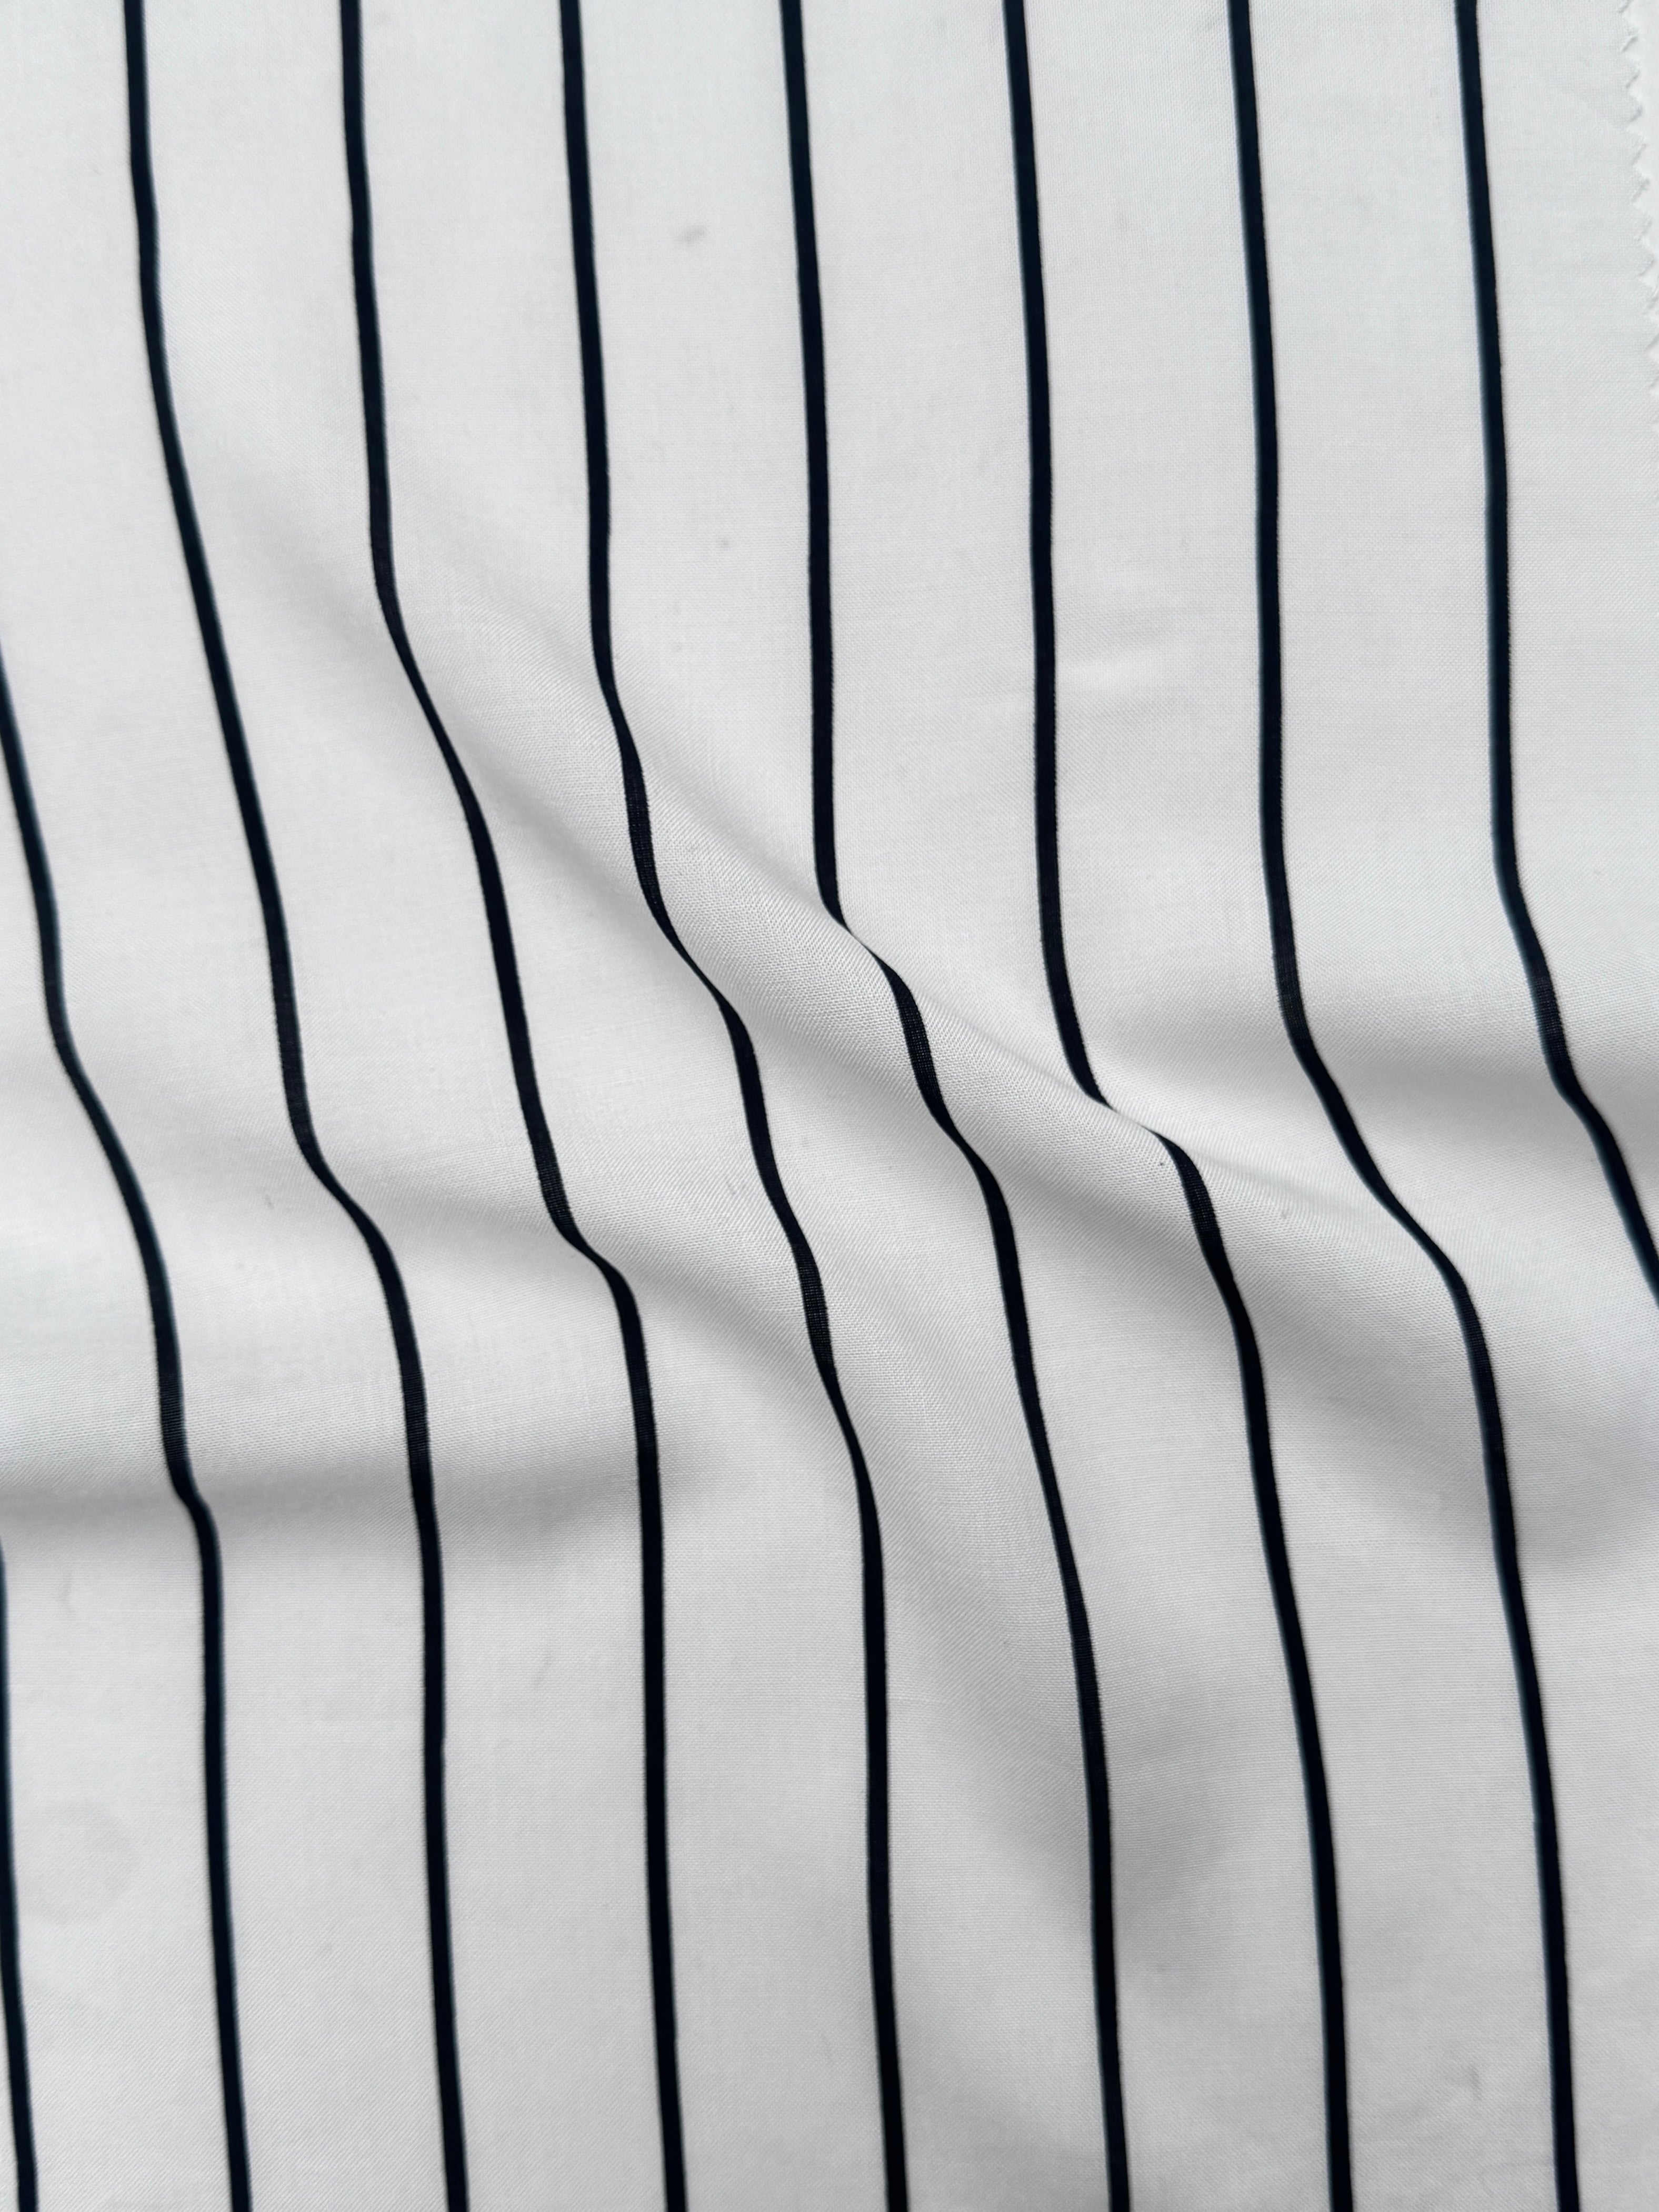 Black/White Stripe Rayon Challis, Black Rayon Challis, White Rayon Challis, eco-friendly fabric, pure Rayon Challis fabric, Rayon Challis, Rayon Challis fabric, kiki textiles, sewing      